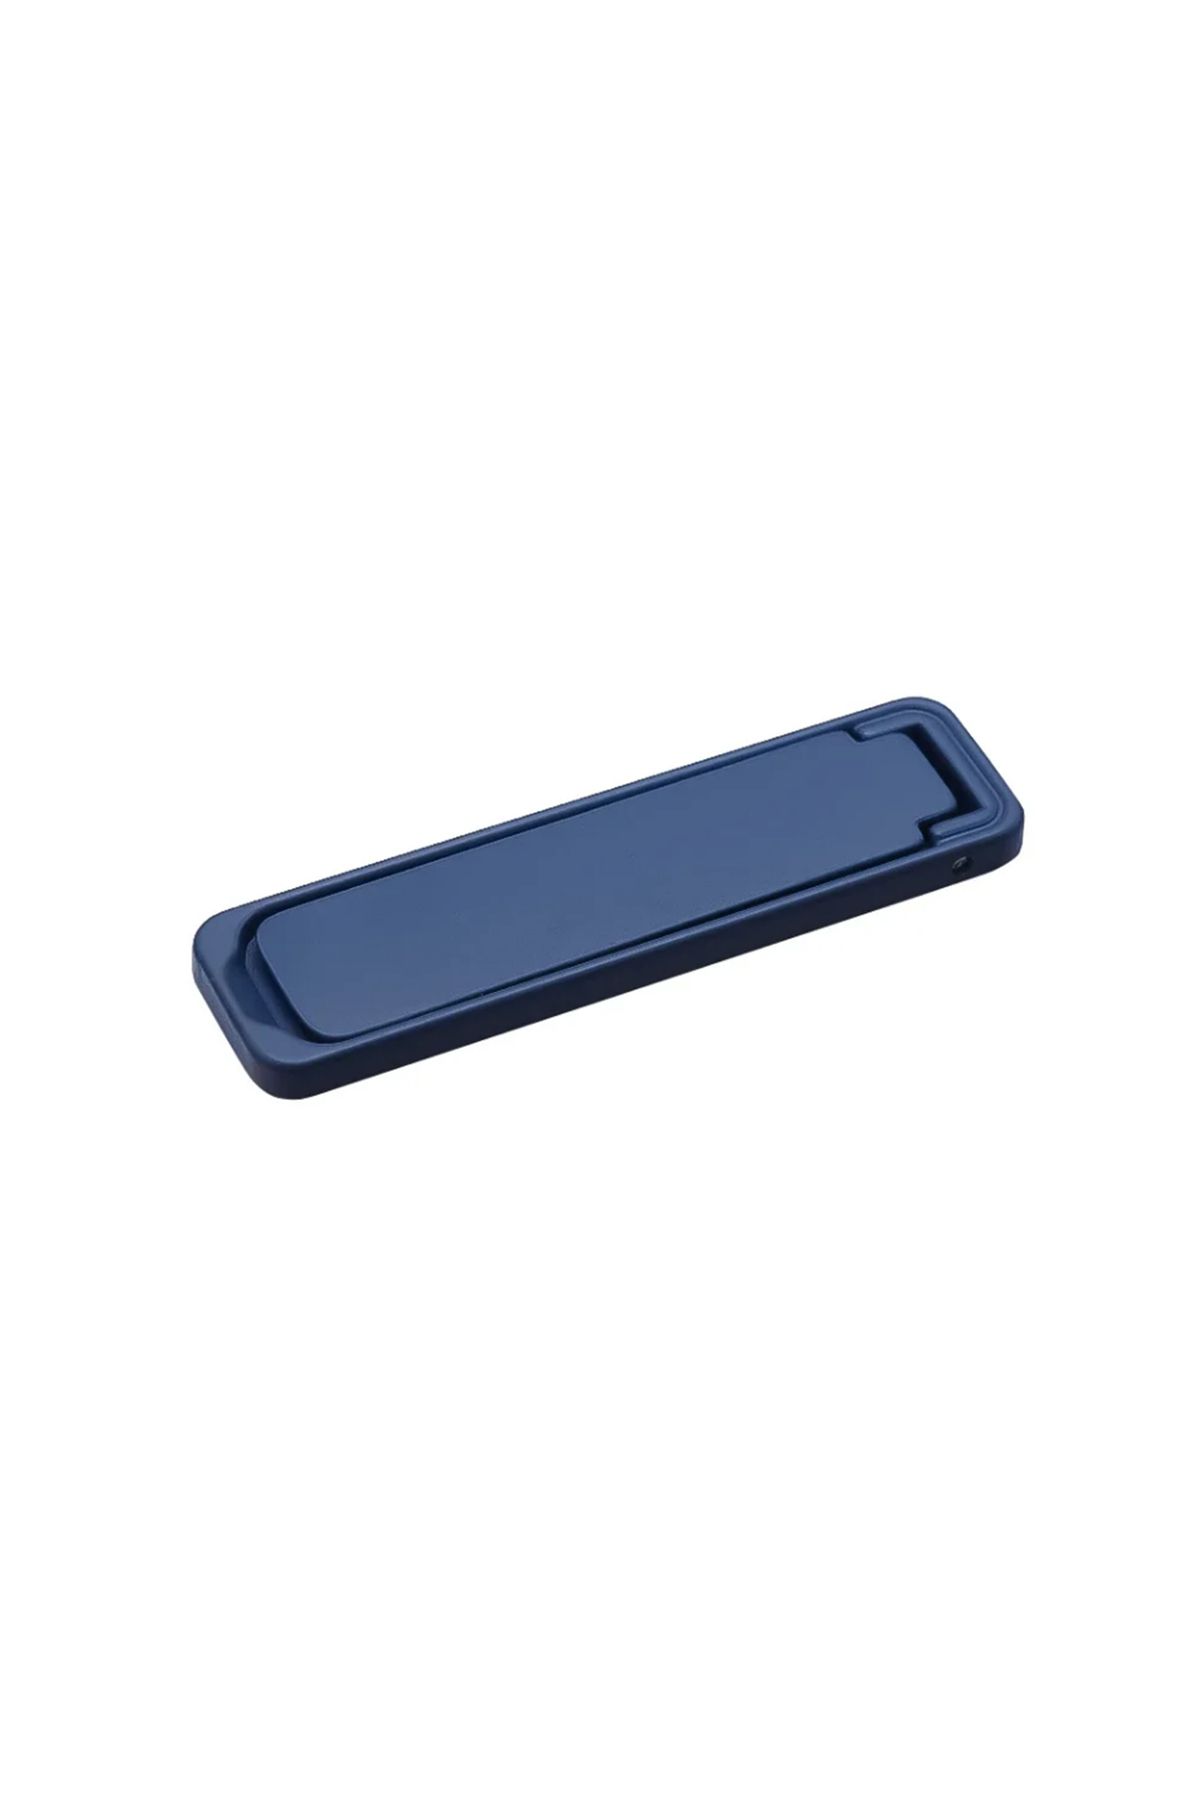 Microcase Telefonlar için Yapışkanlı Metal Katlanabilir Stand Parçası - AL4172